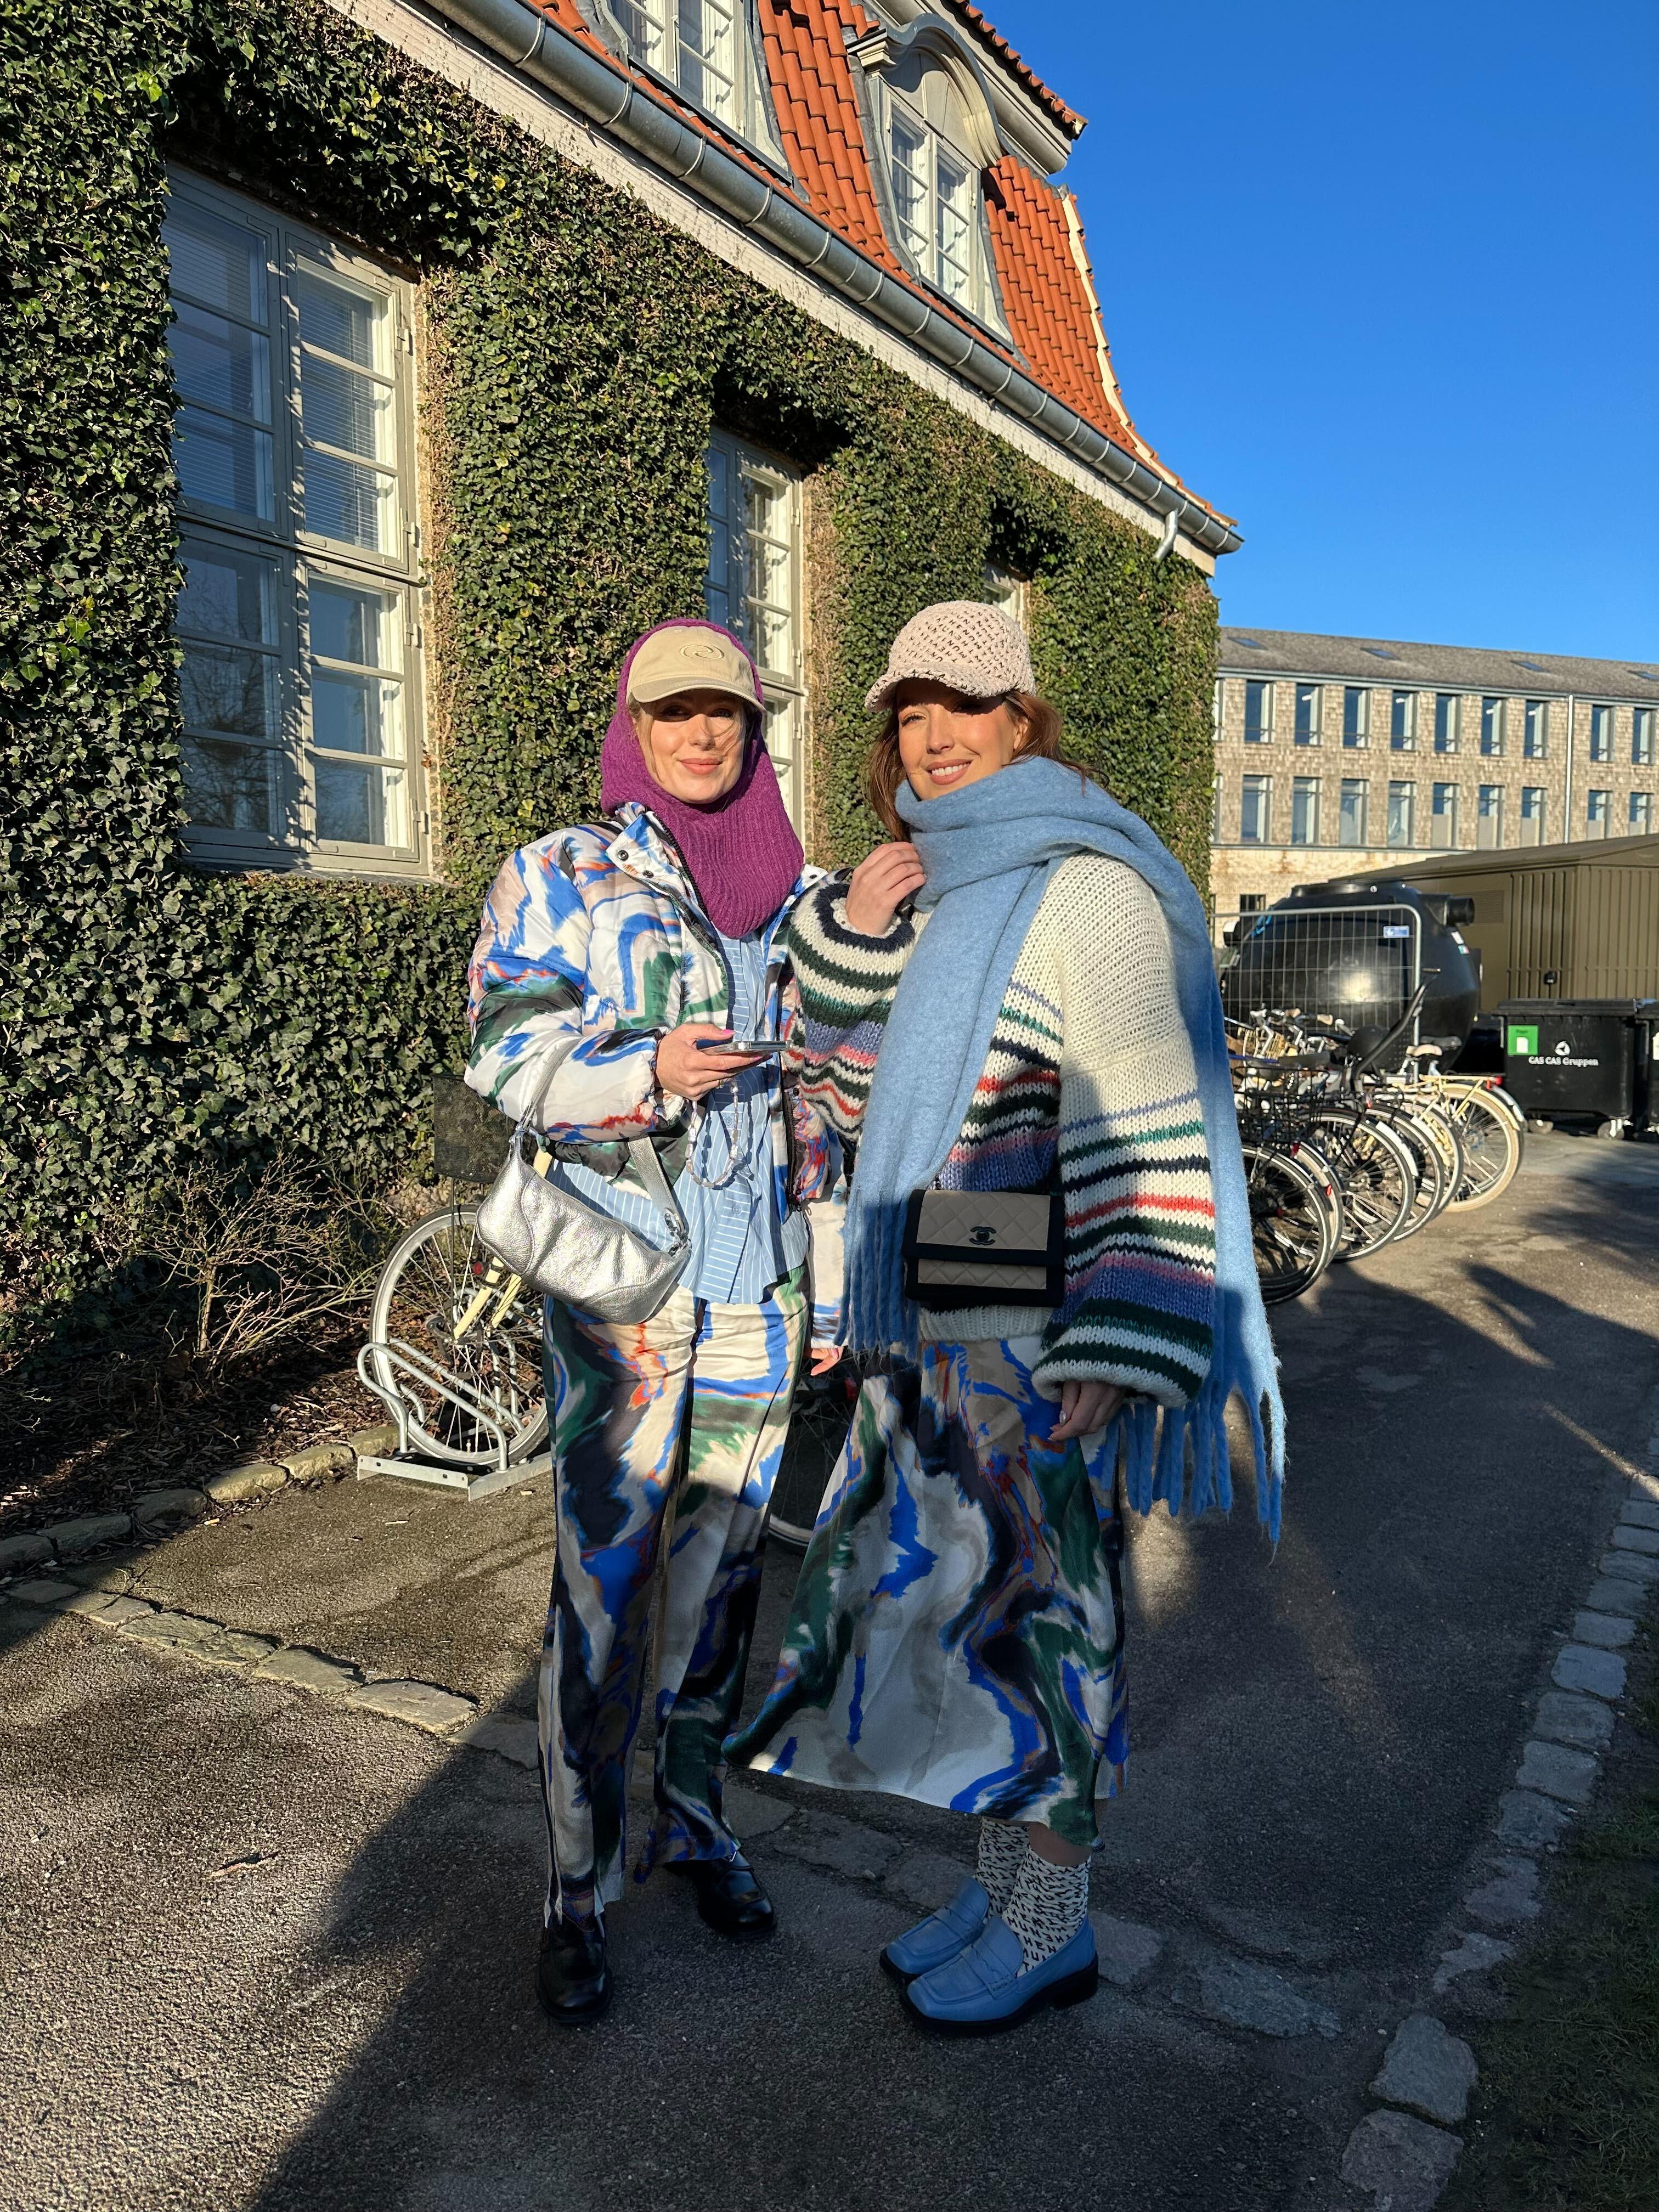 Deilig strikk slår aldri feil. Her er Babette van Luijk og Do Nossent på vei inn til Munthes visning.